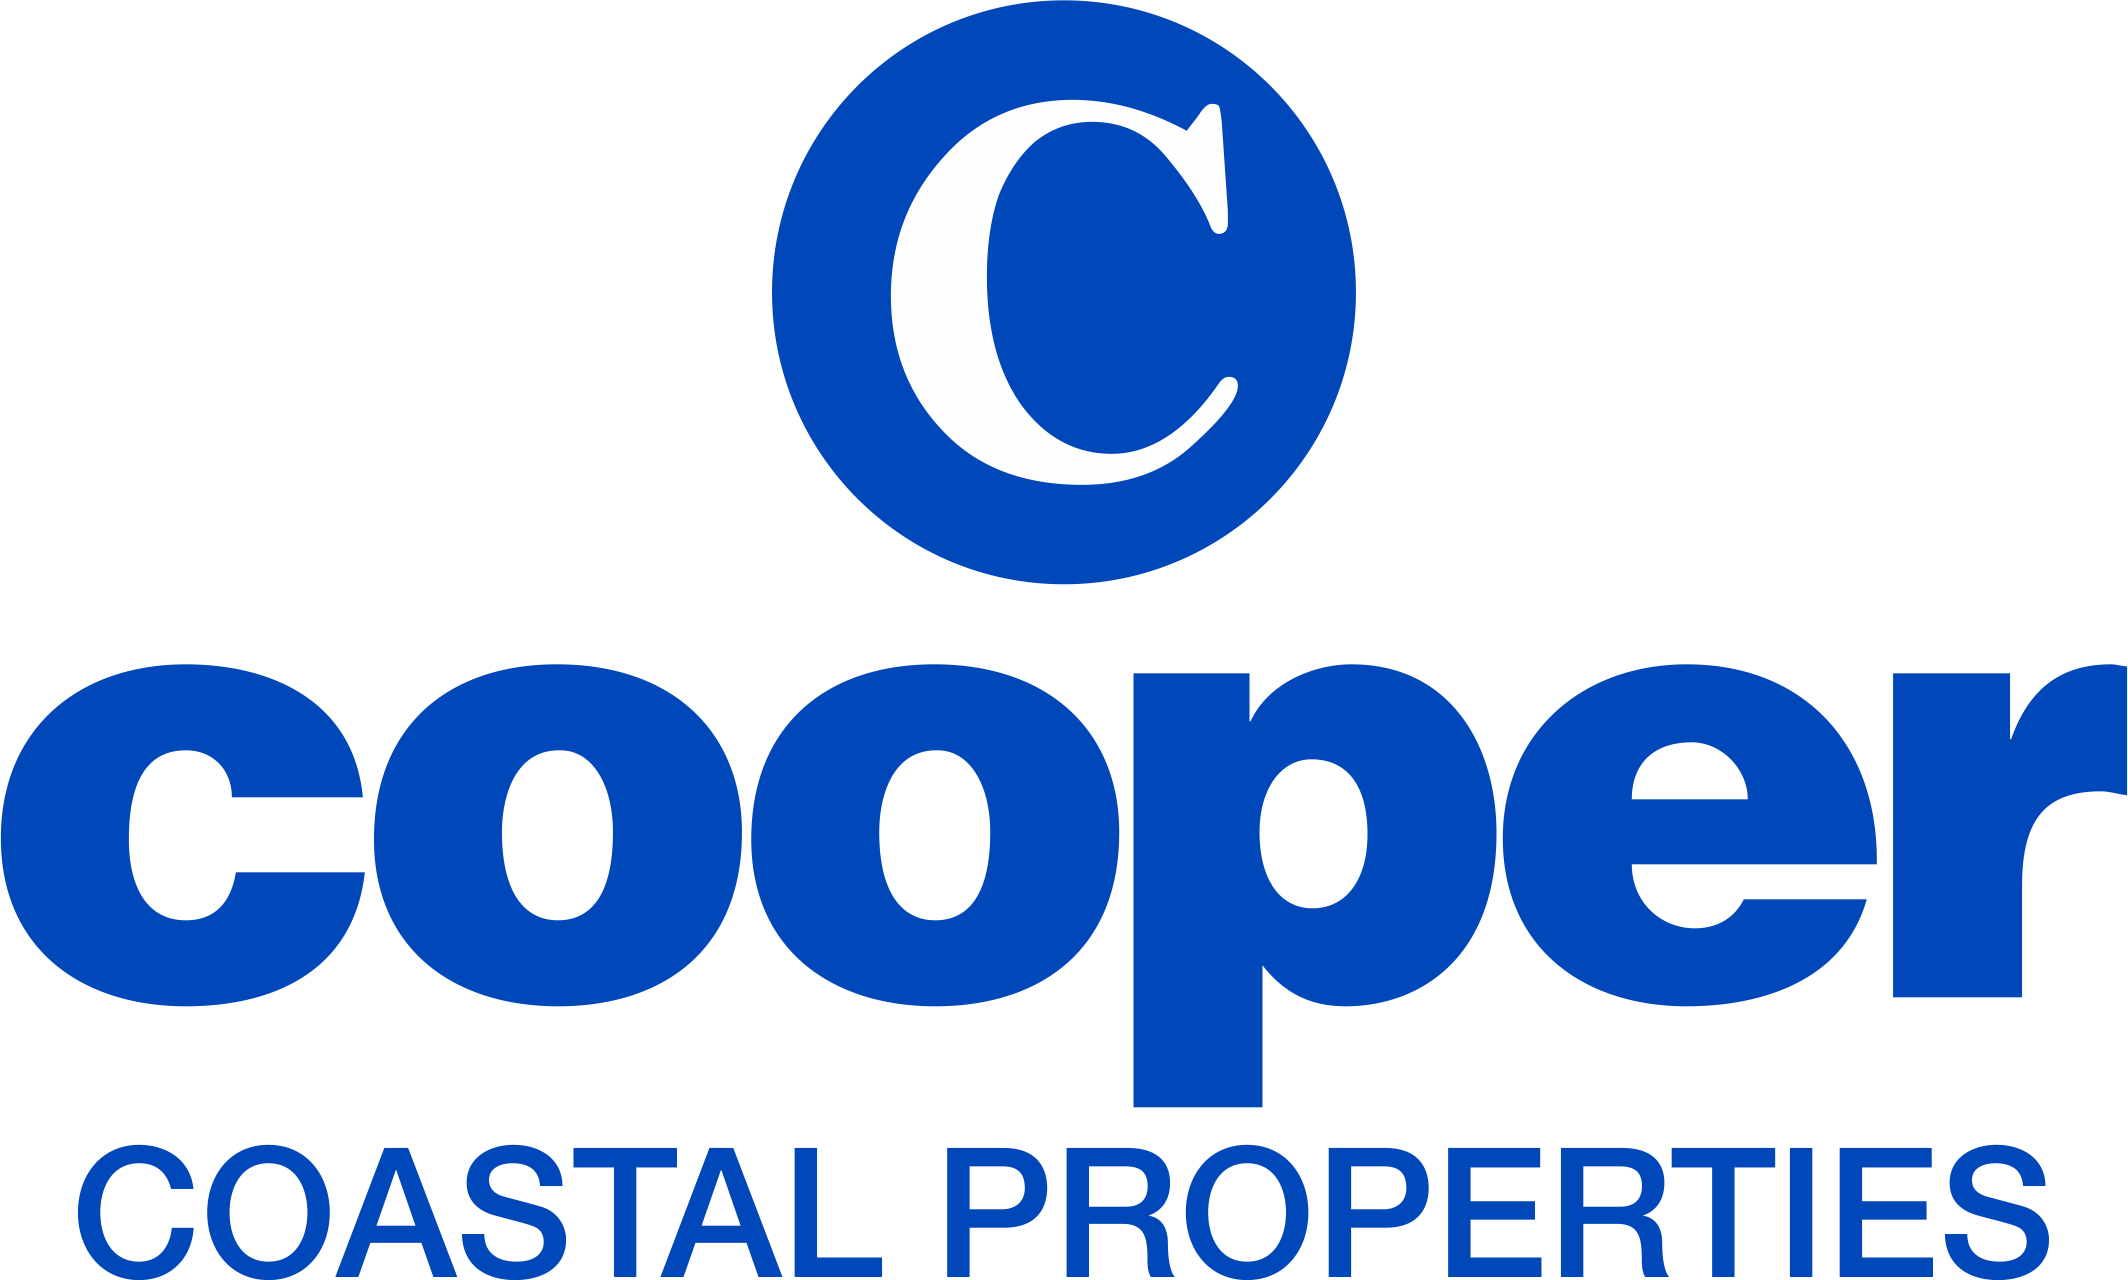 Cooper Coastal Properties